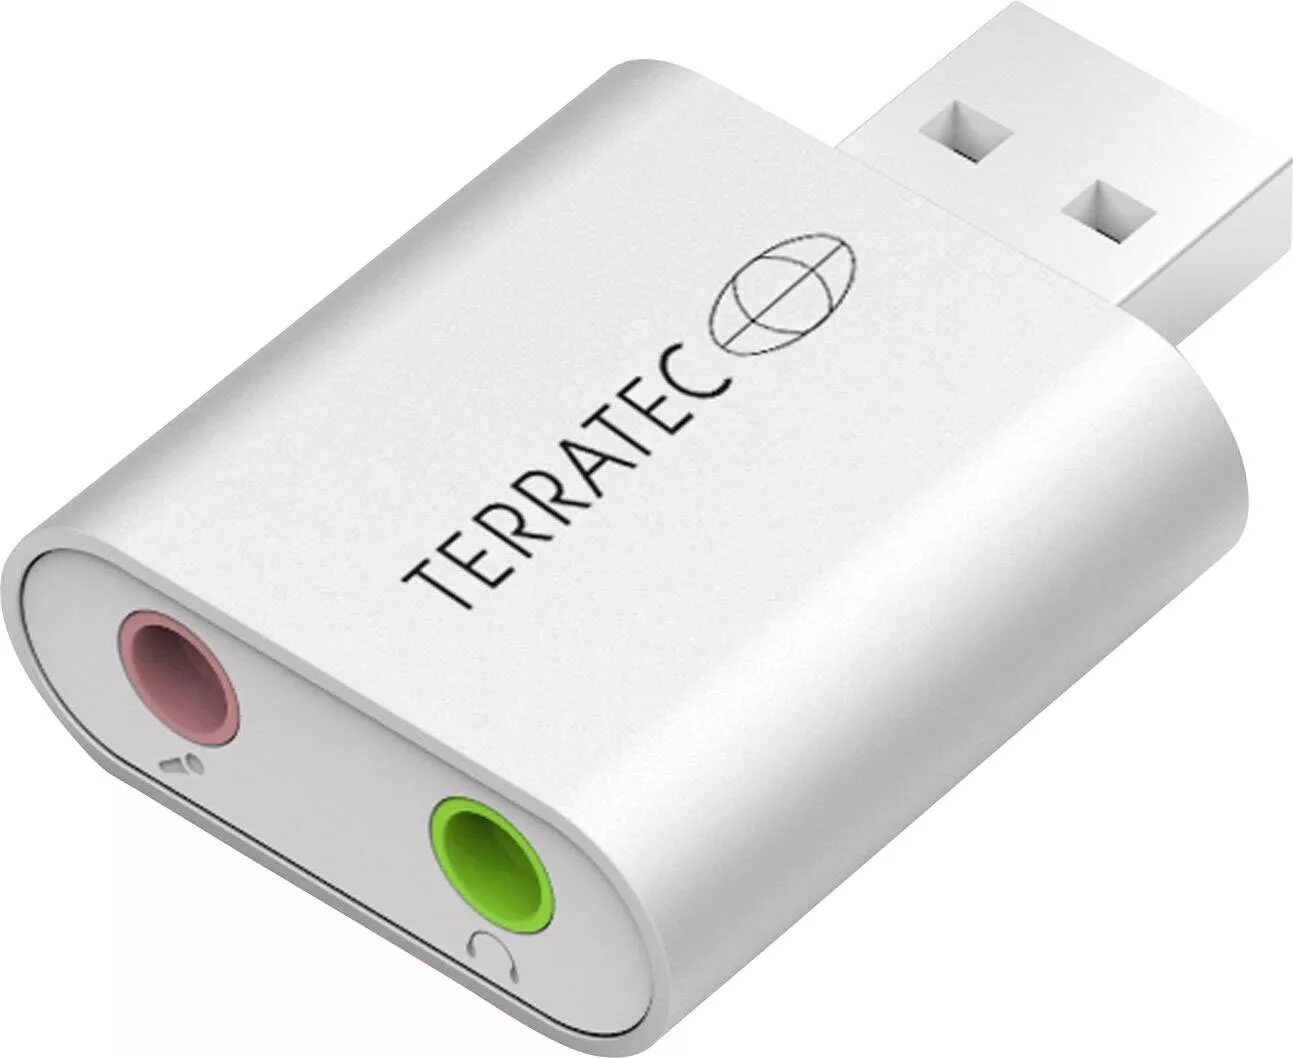 Звуковая карта usb купить. Внешняя звуковая карта Terratec Aureon Dual USB. Внешняя звуковая карта Terratec Aureon 7.1 USB. Внешняя звуковая карта USB Jack 3.5mm. Внешняя звуковая карта i-Tec USB 2.0 Metal Mini Audio Adapter.